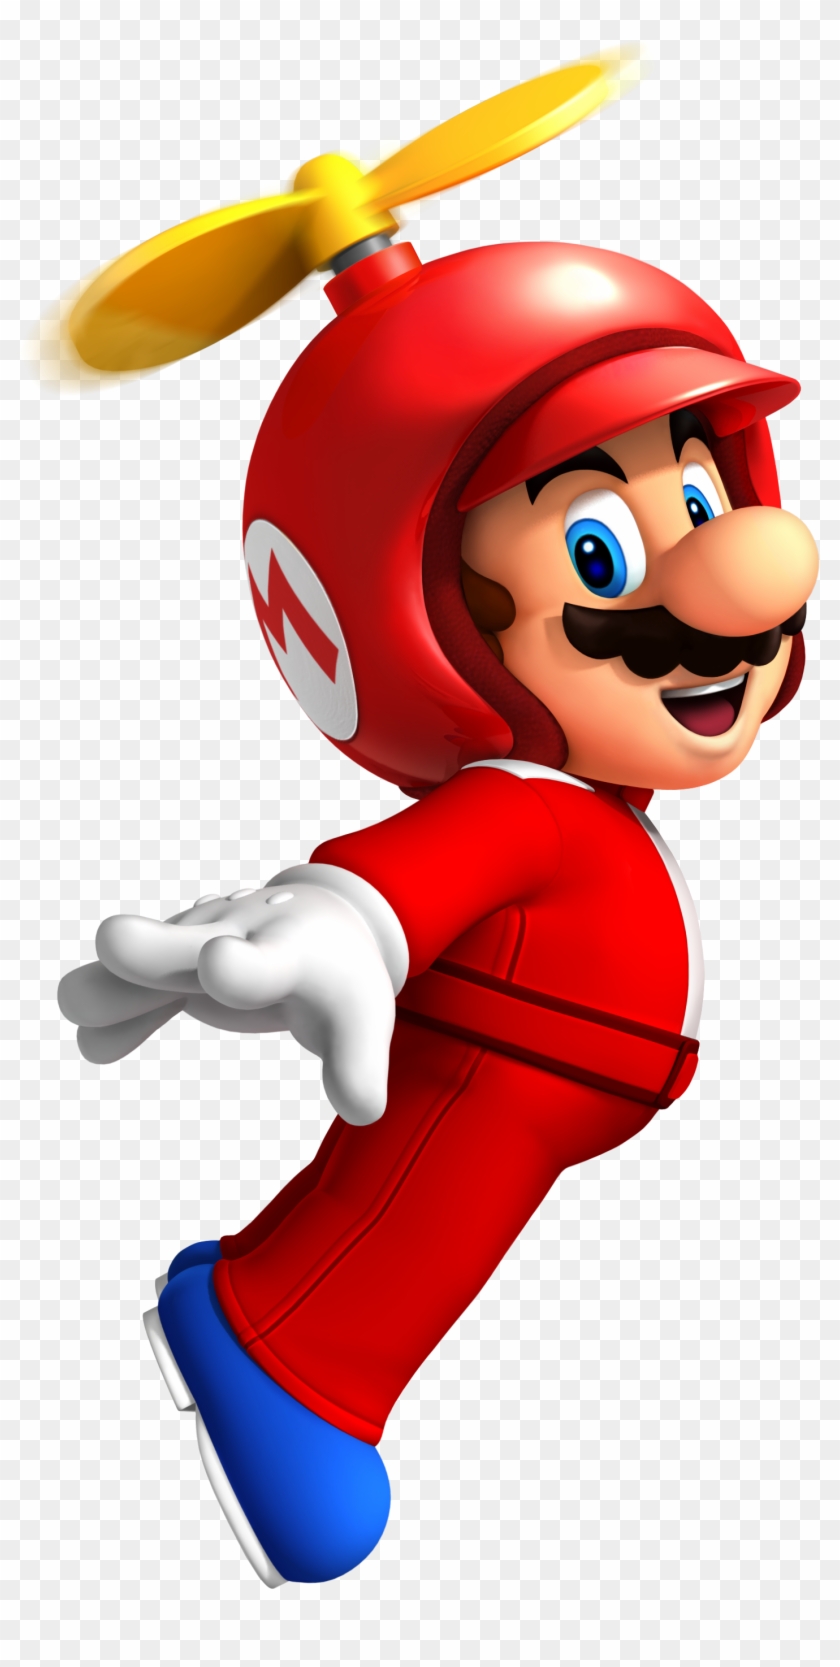 Super Mario Flying Png Image - Super Mario Bros Wii Mario #1150926